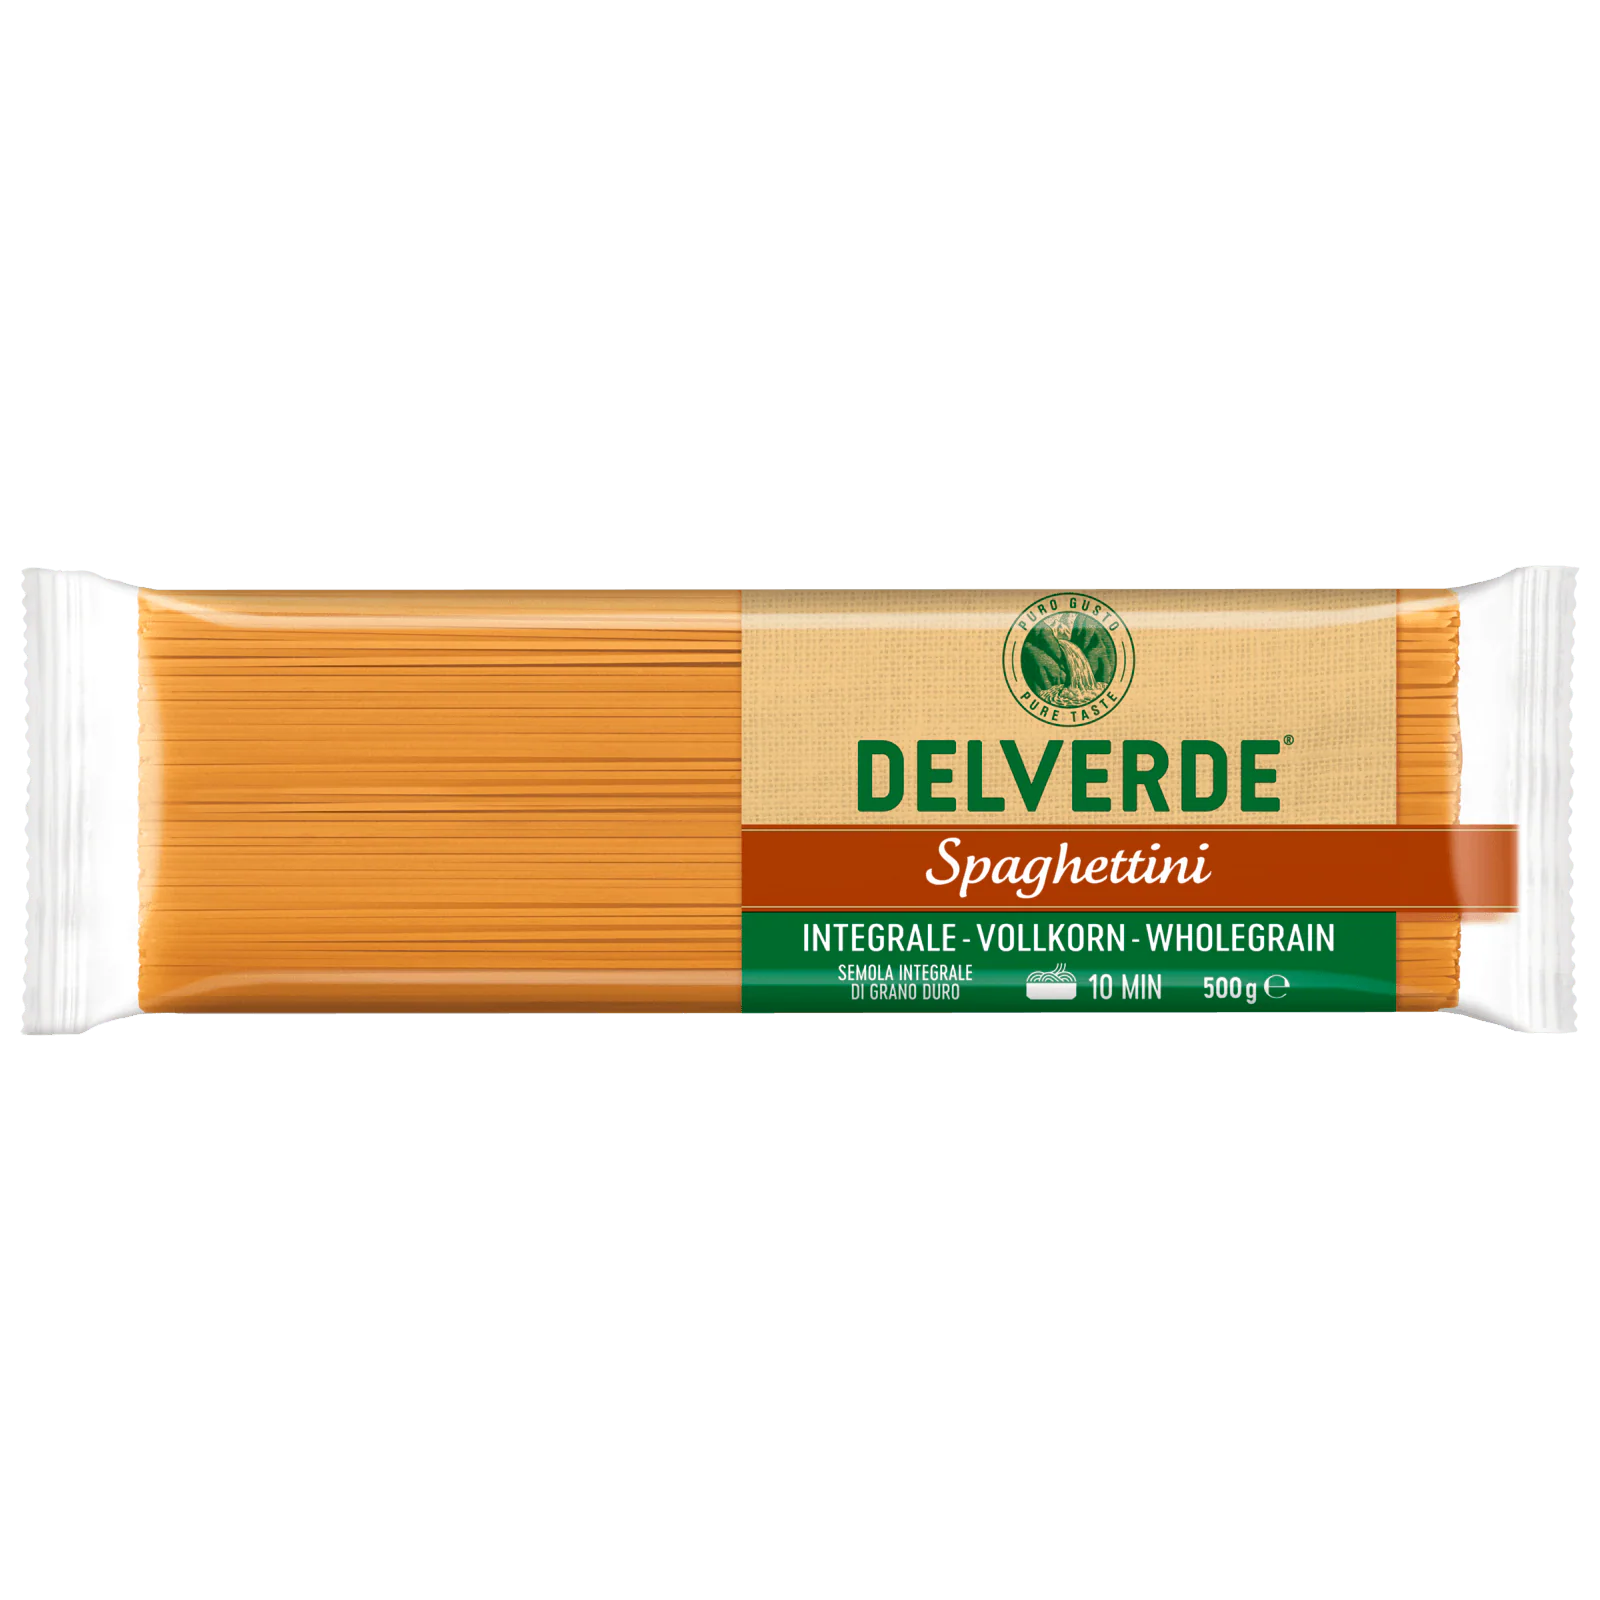 Delverde Vollkorn Spaghetti 500g bei REWE online bestellen!